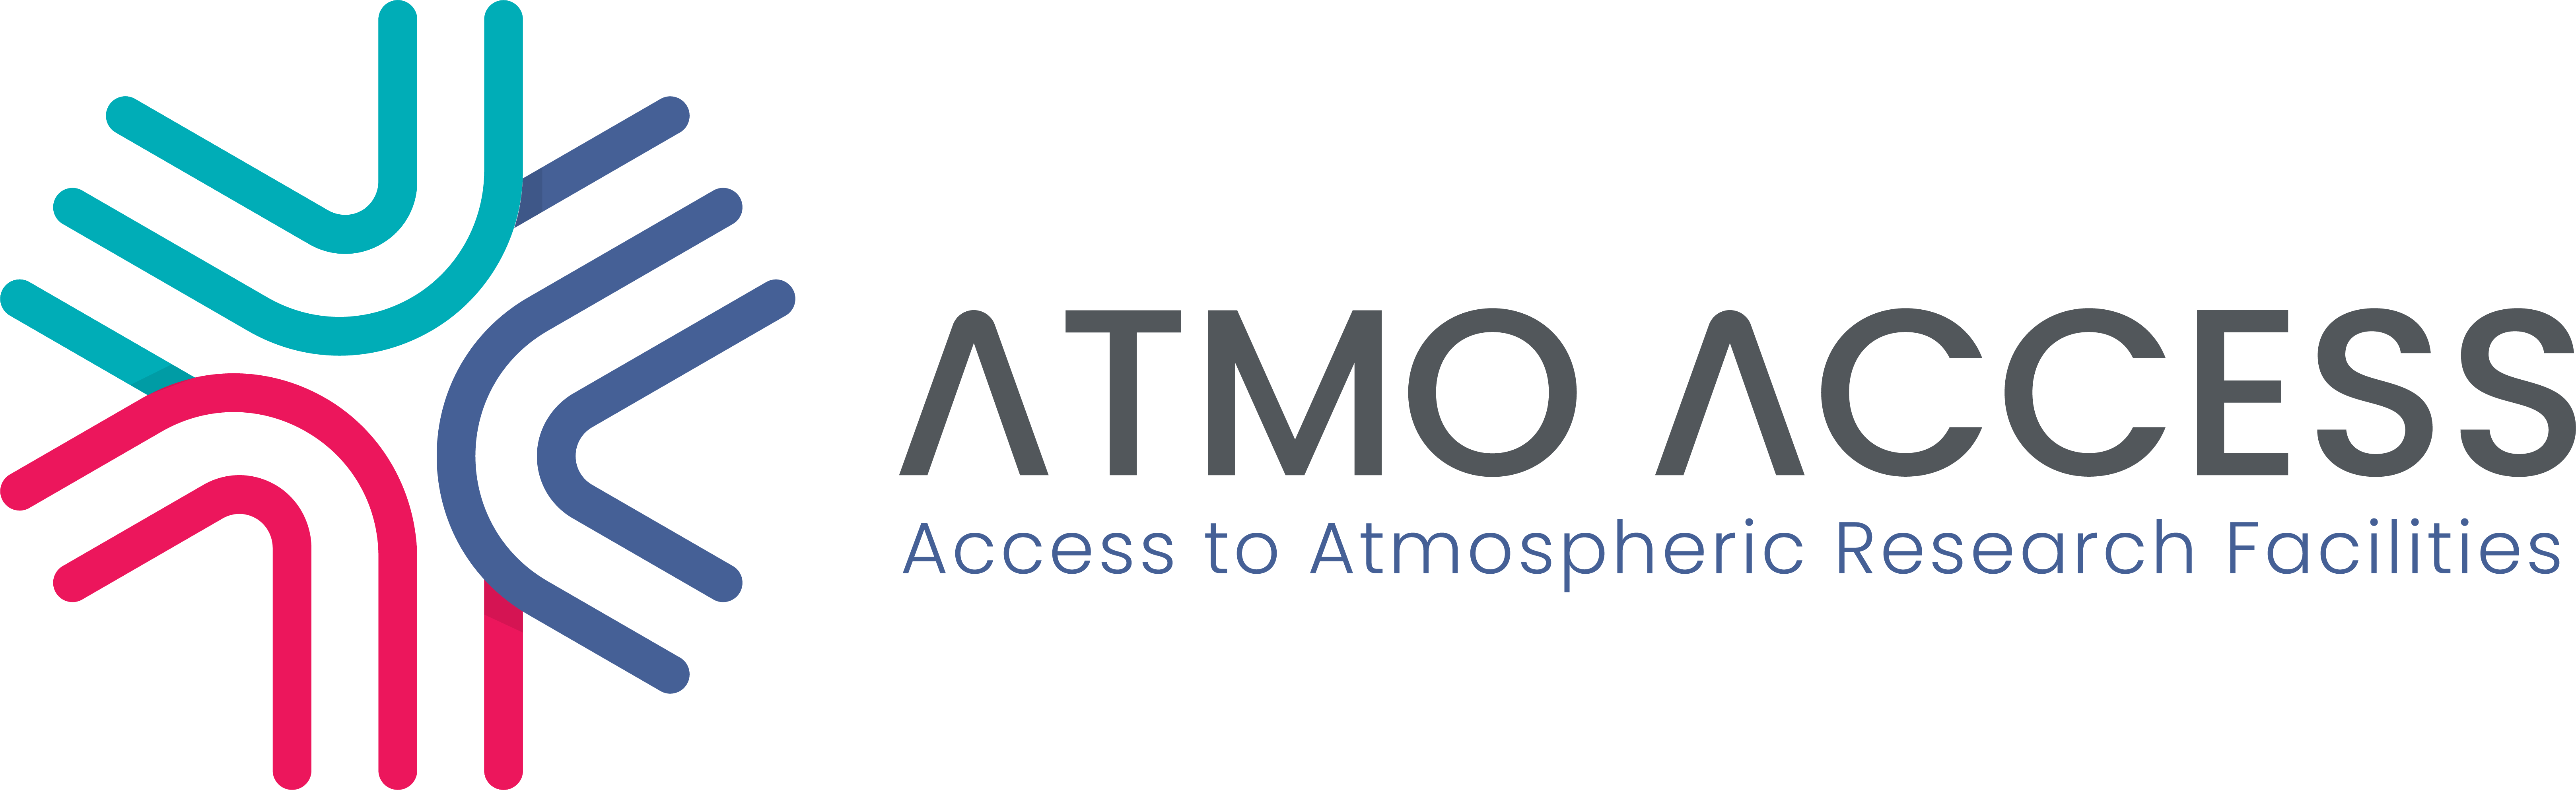 Λύσεις για βιώσιμη πρόσβαση σε εγκαταστάσεις έρευνας της ατμόσφαιρας logo